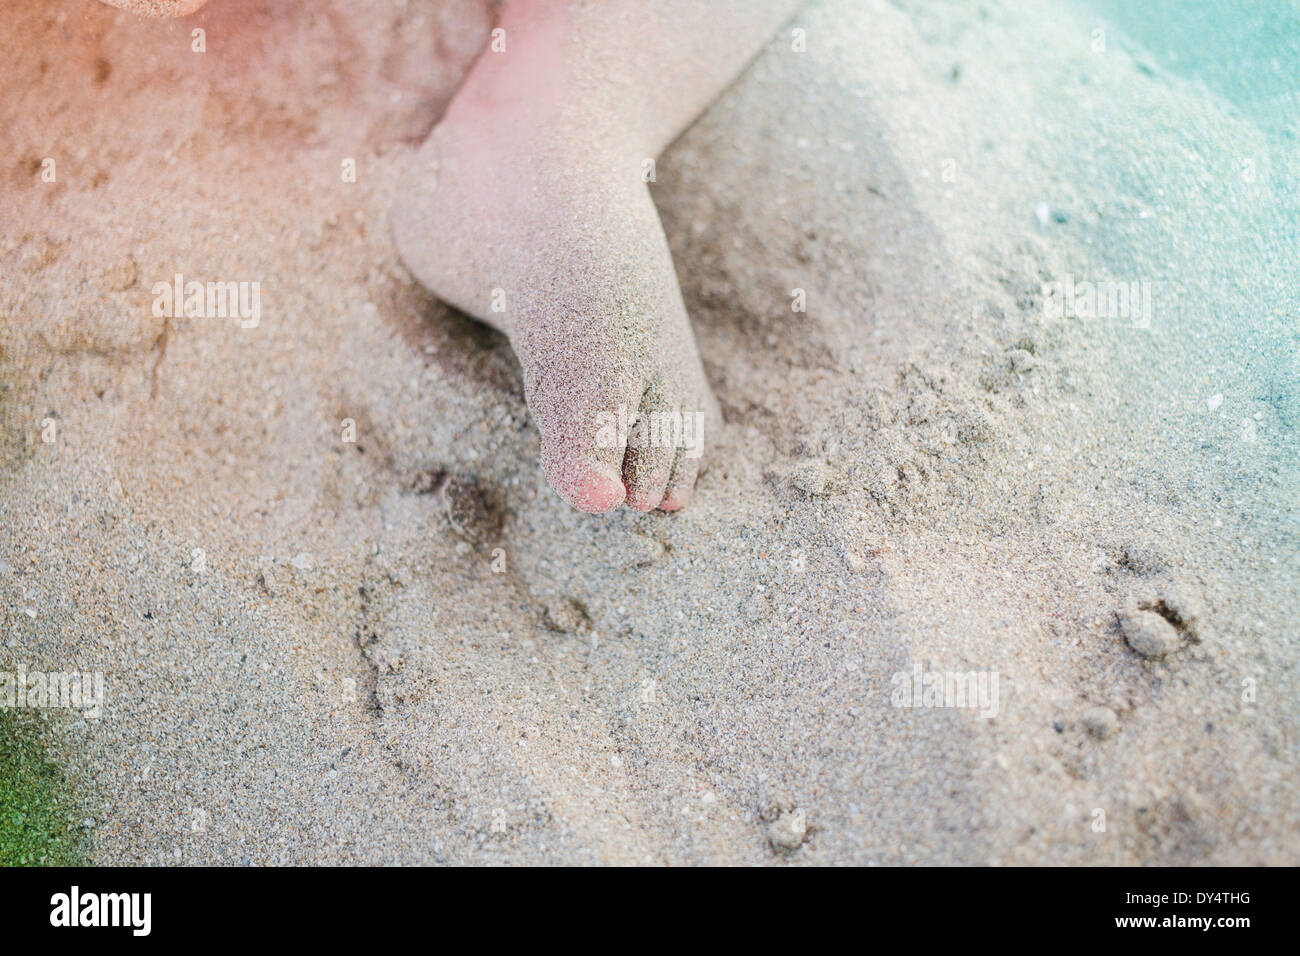 Le pied de l'enfant, couvert de sable Banque D'Images